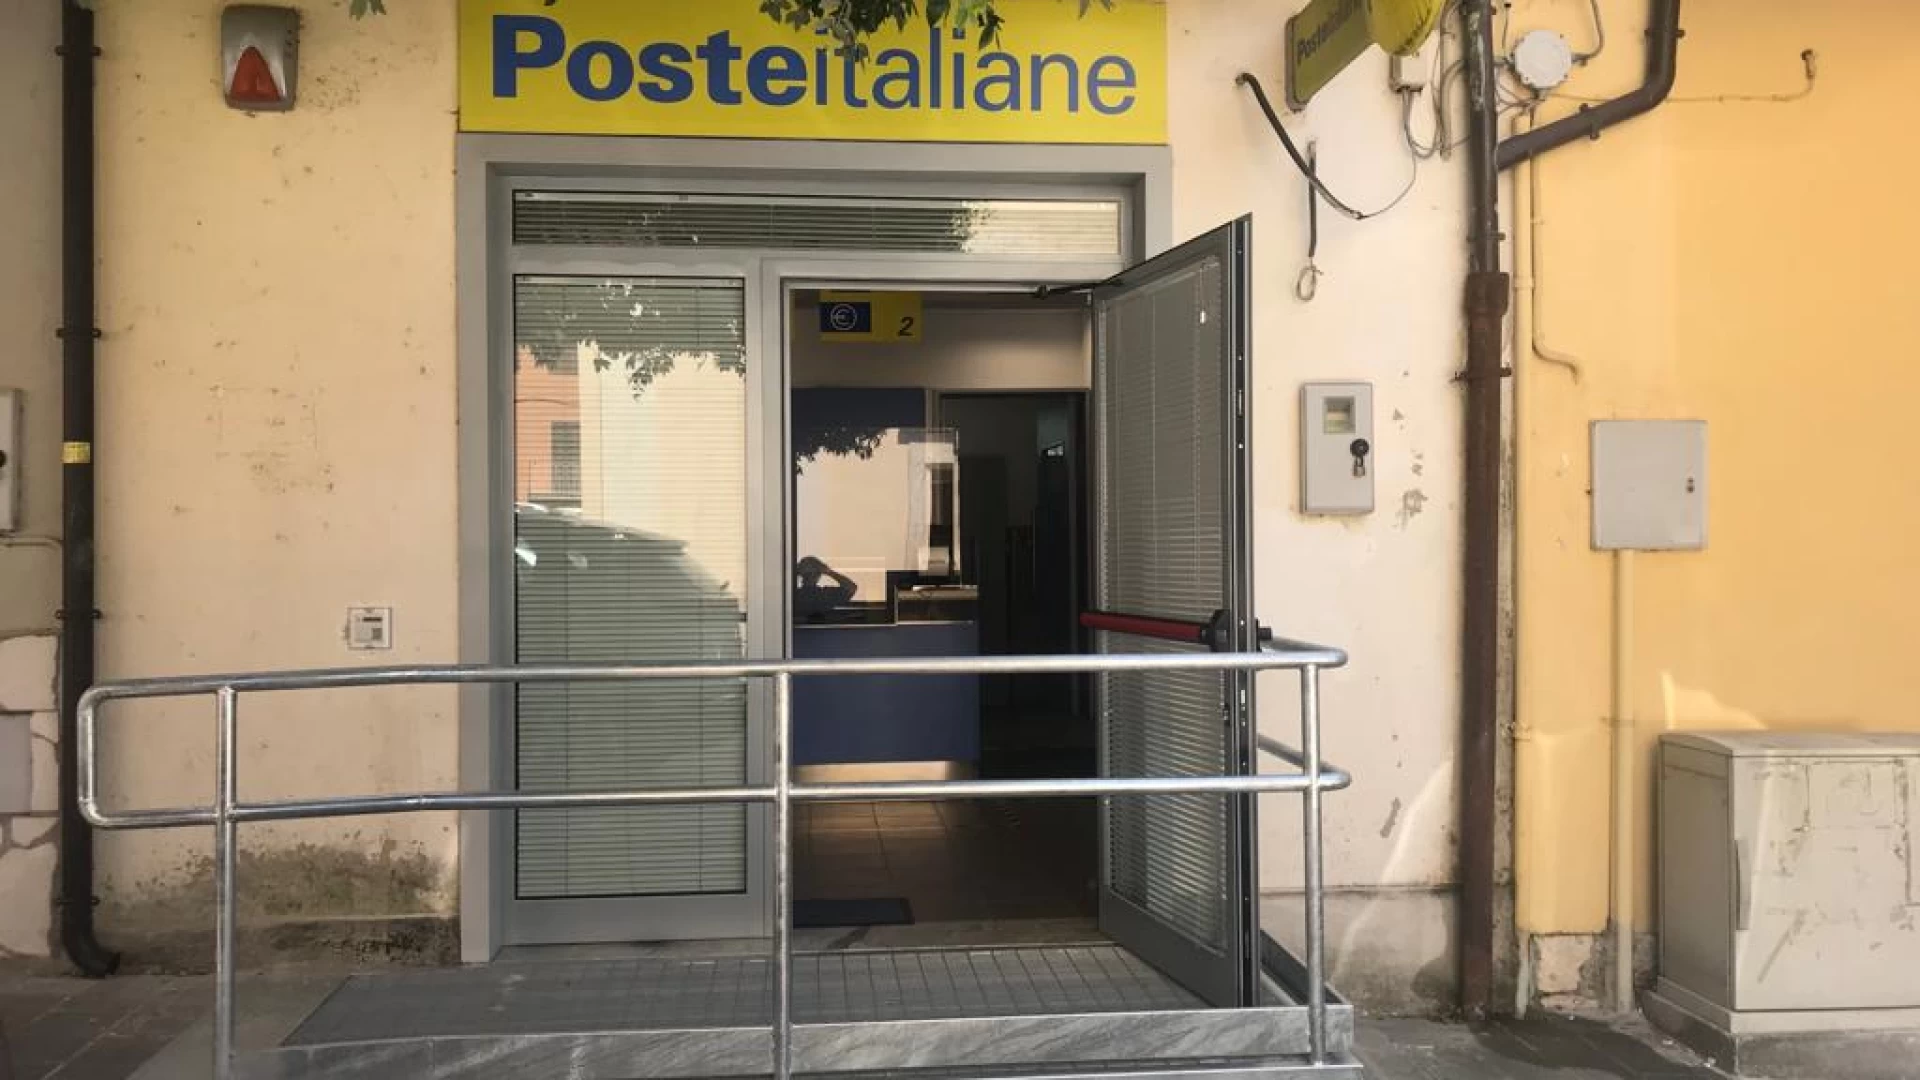 Poste Italiane: abbattere le barriere architettoniche nell'ufficio postale del centro storico.